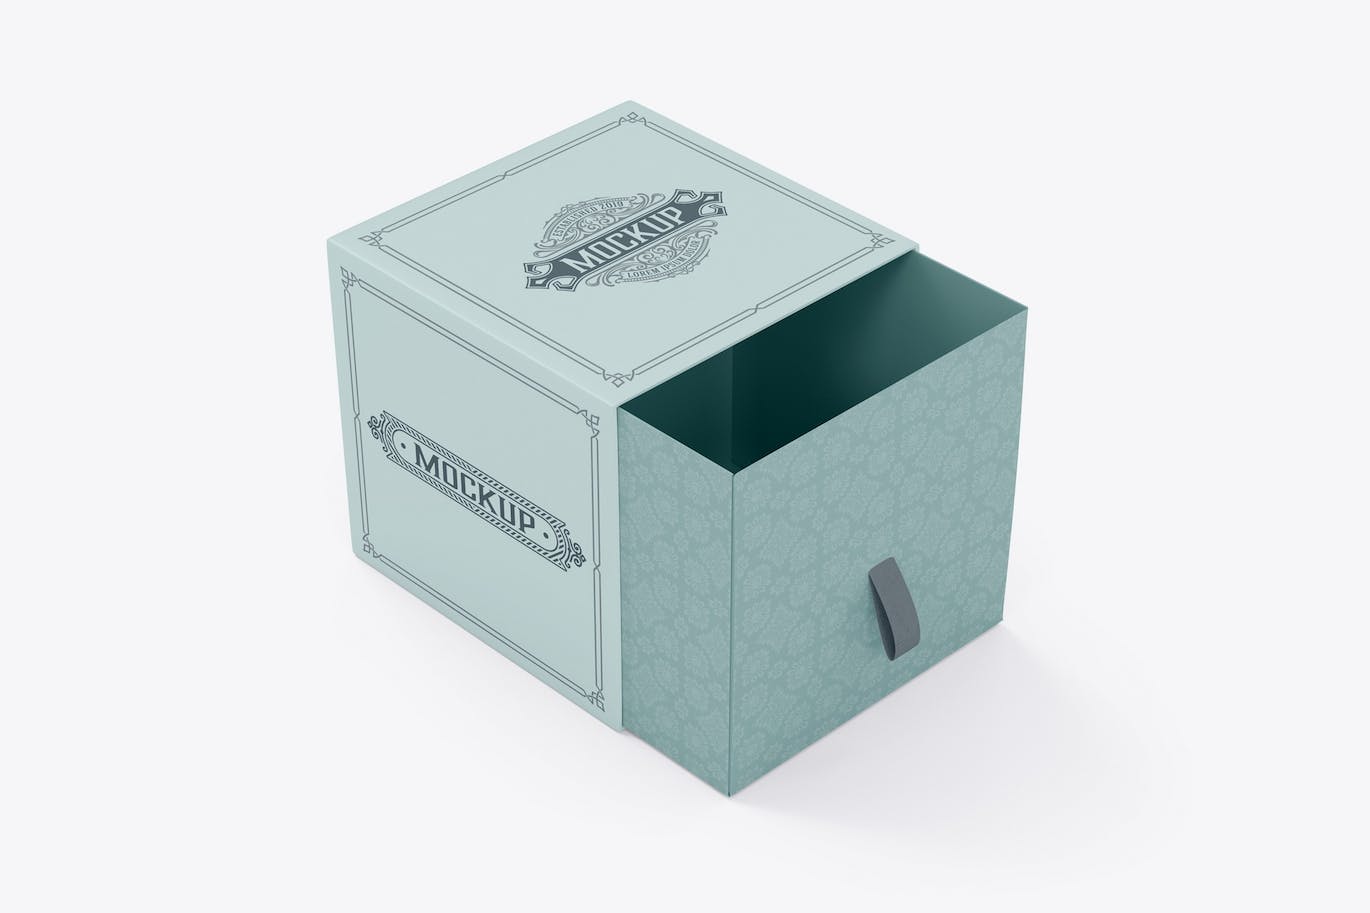 抽屉礼品盒子设计样机 Slide Box Mockup 样机素材 第1张